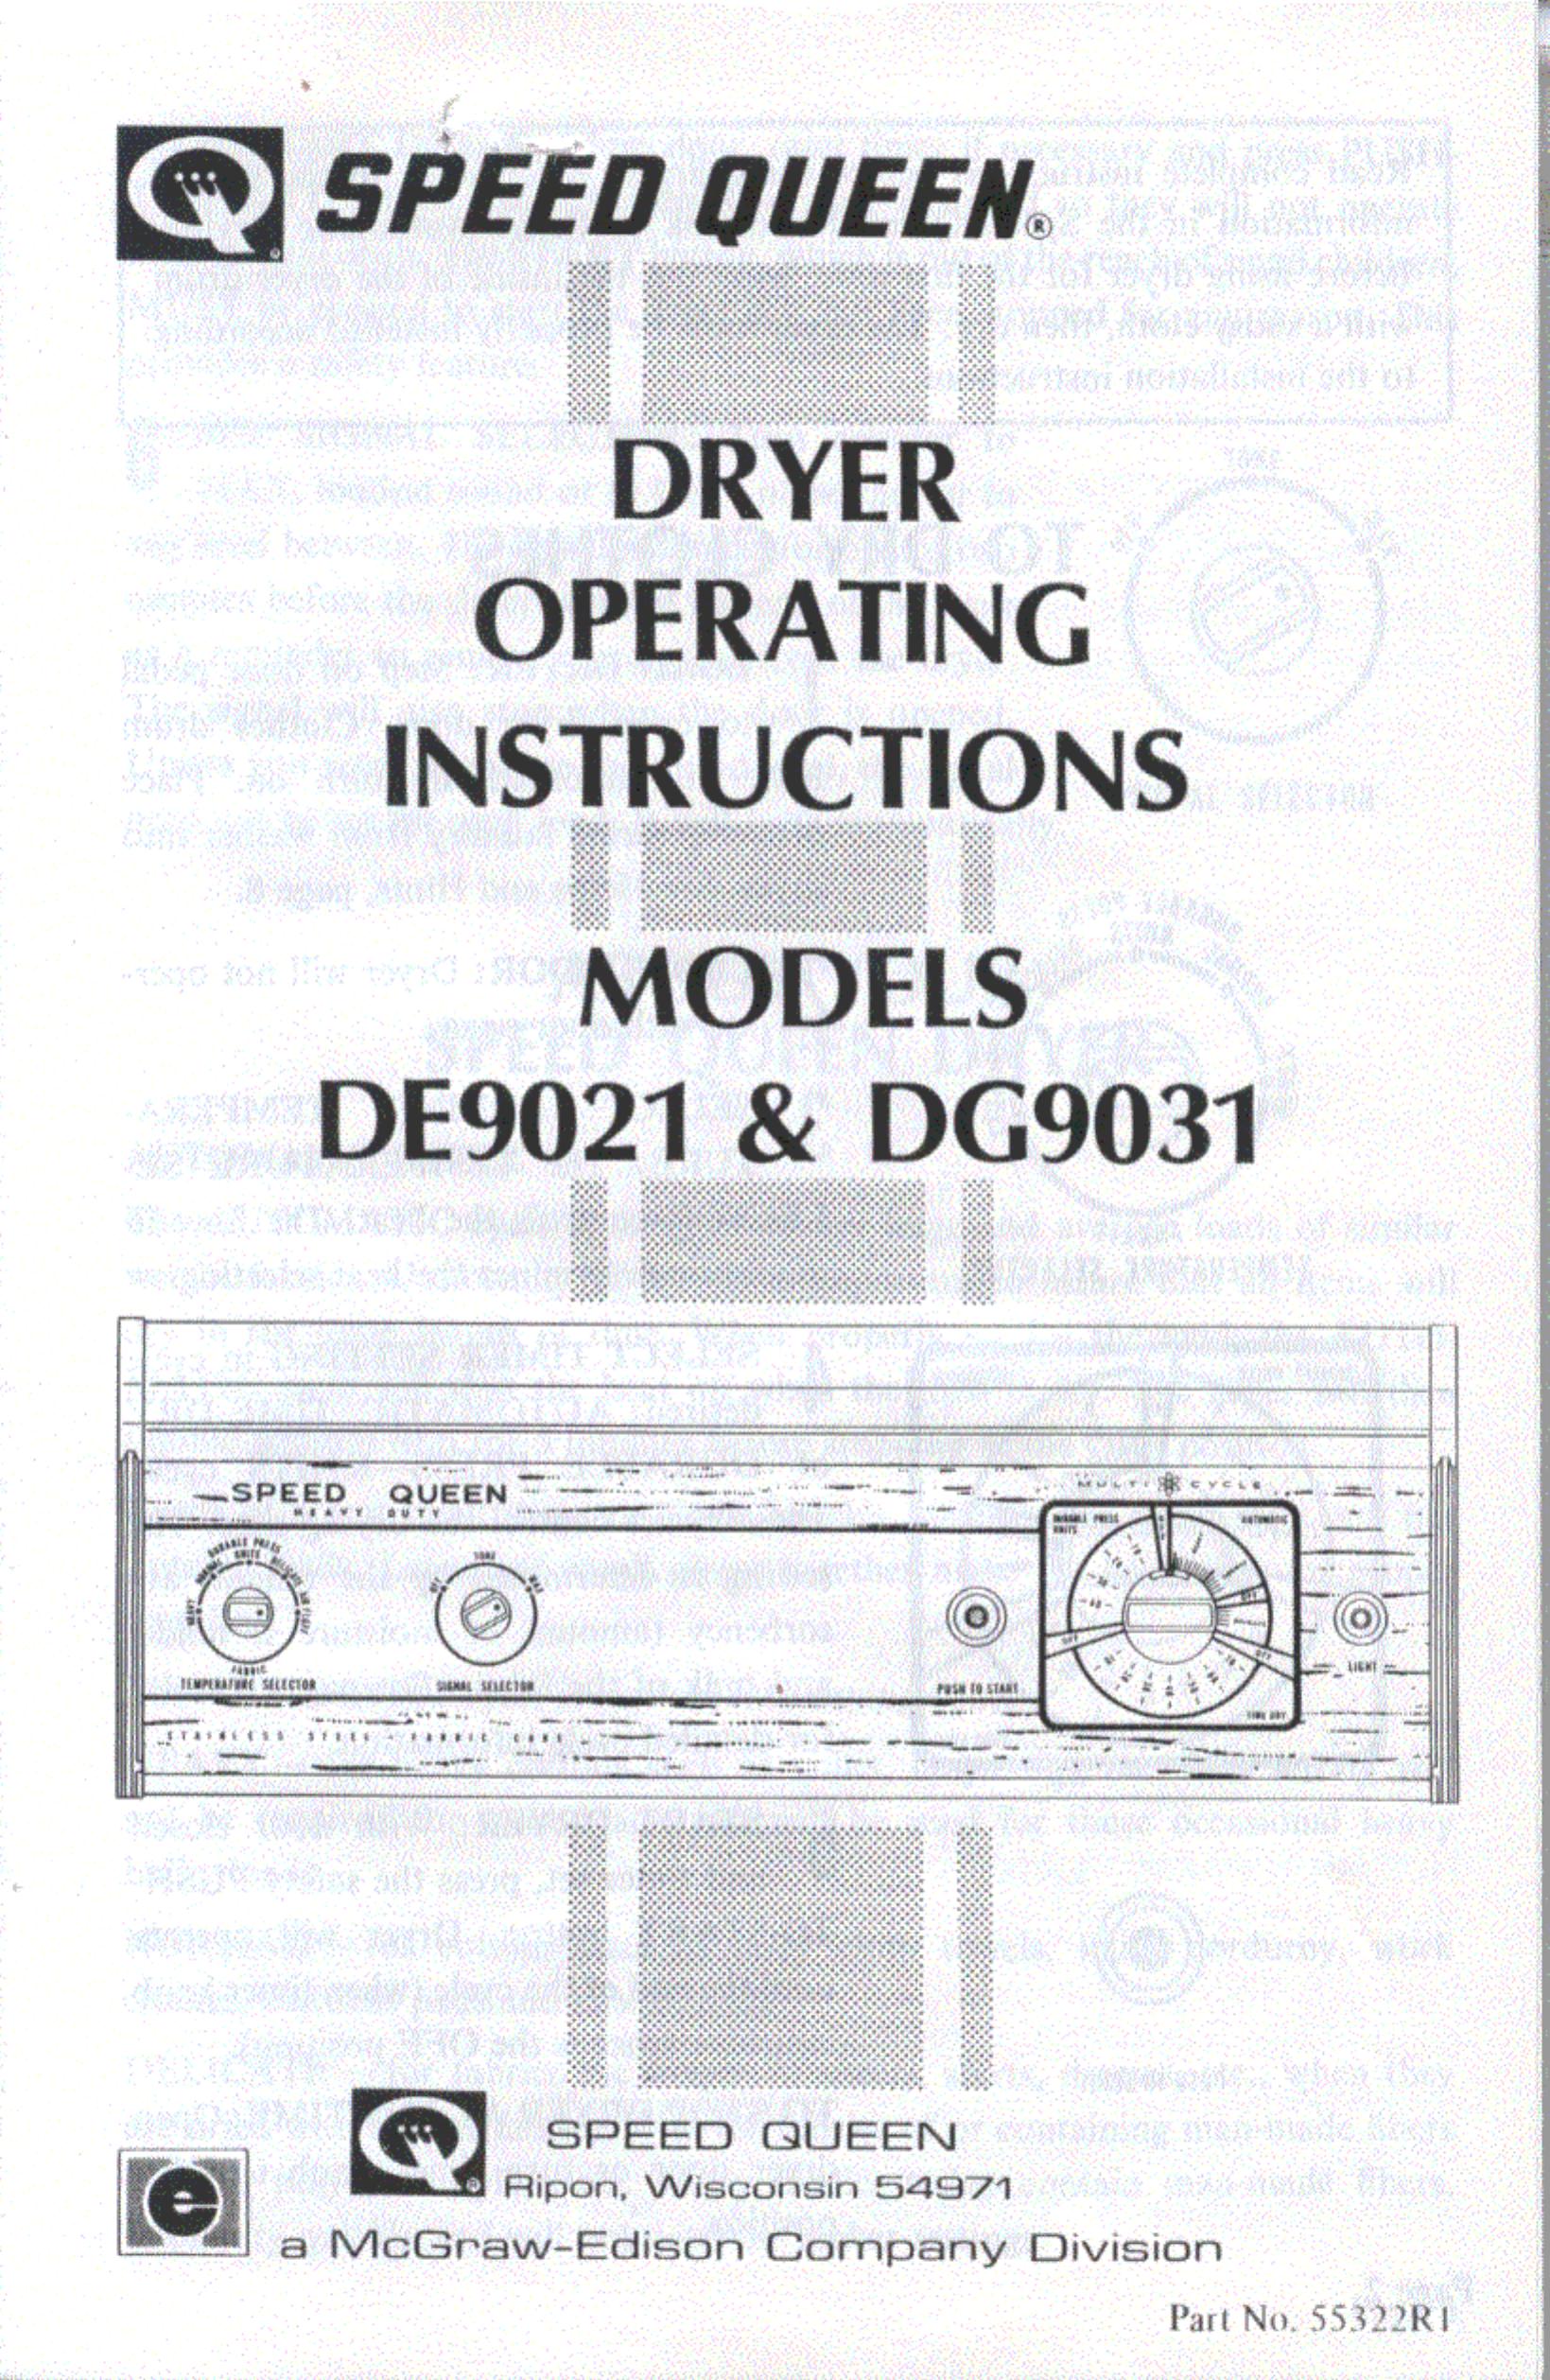 Speed Queen DG9031 Washer/Dryer User Manual